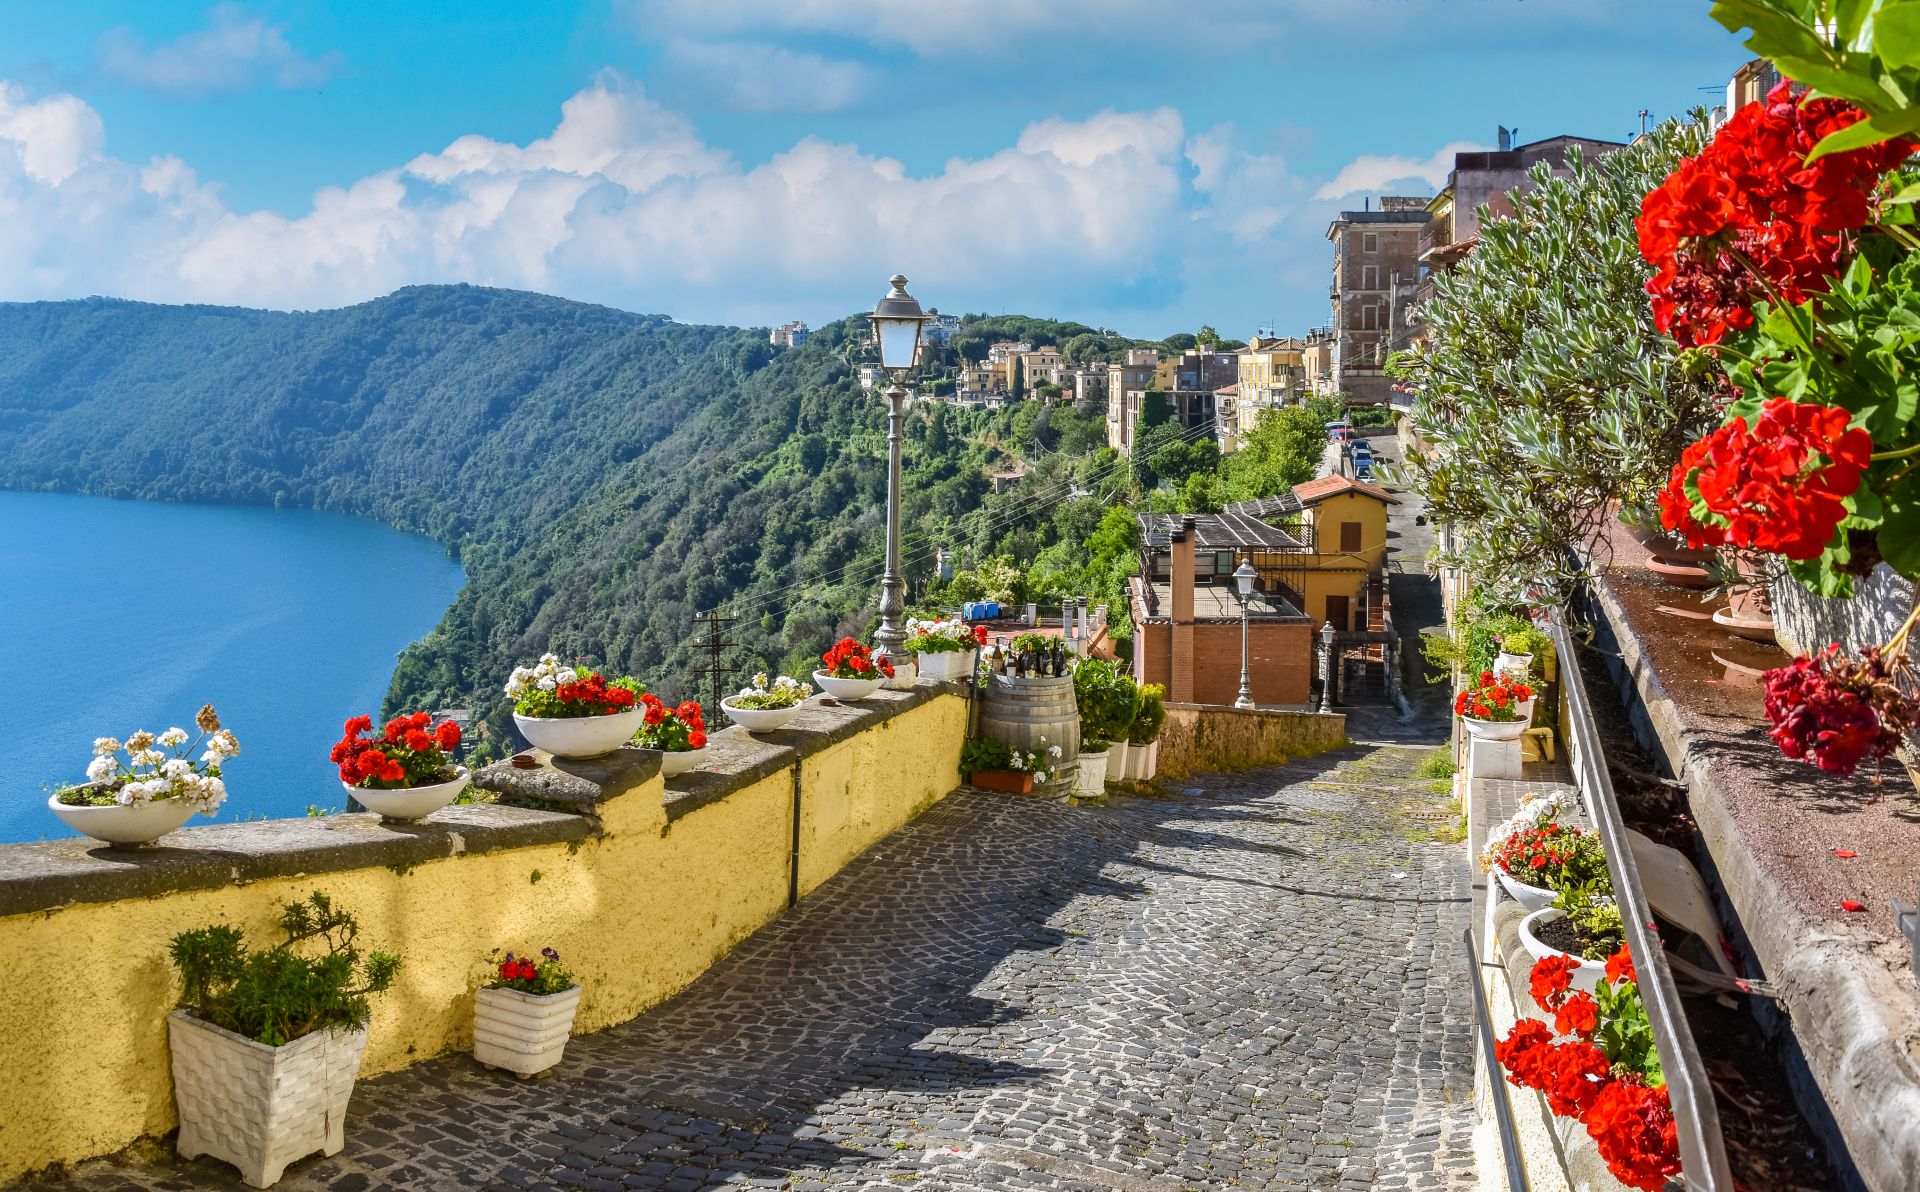 Scenic-sight-in-Castel-Gandolfo-with-the-Albano-lake-in-the-province-of-Rome-Lazio-central-Italy